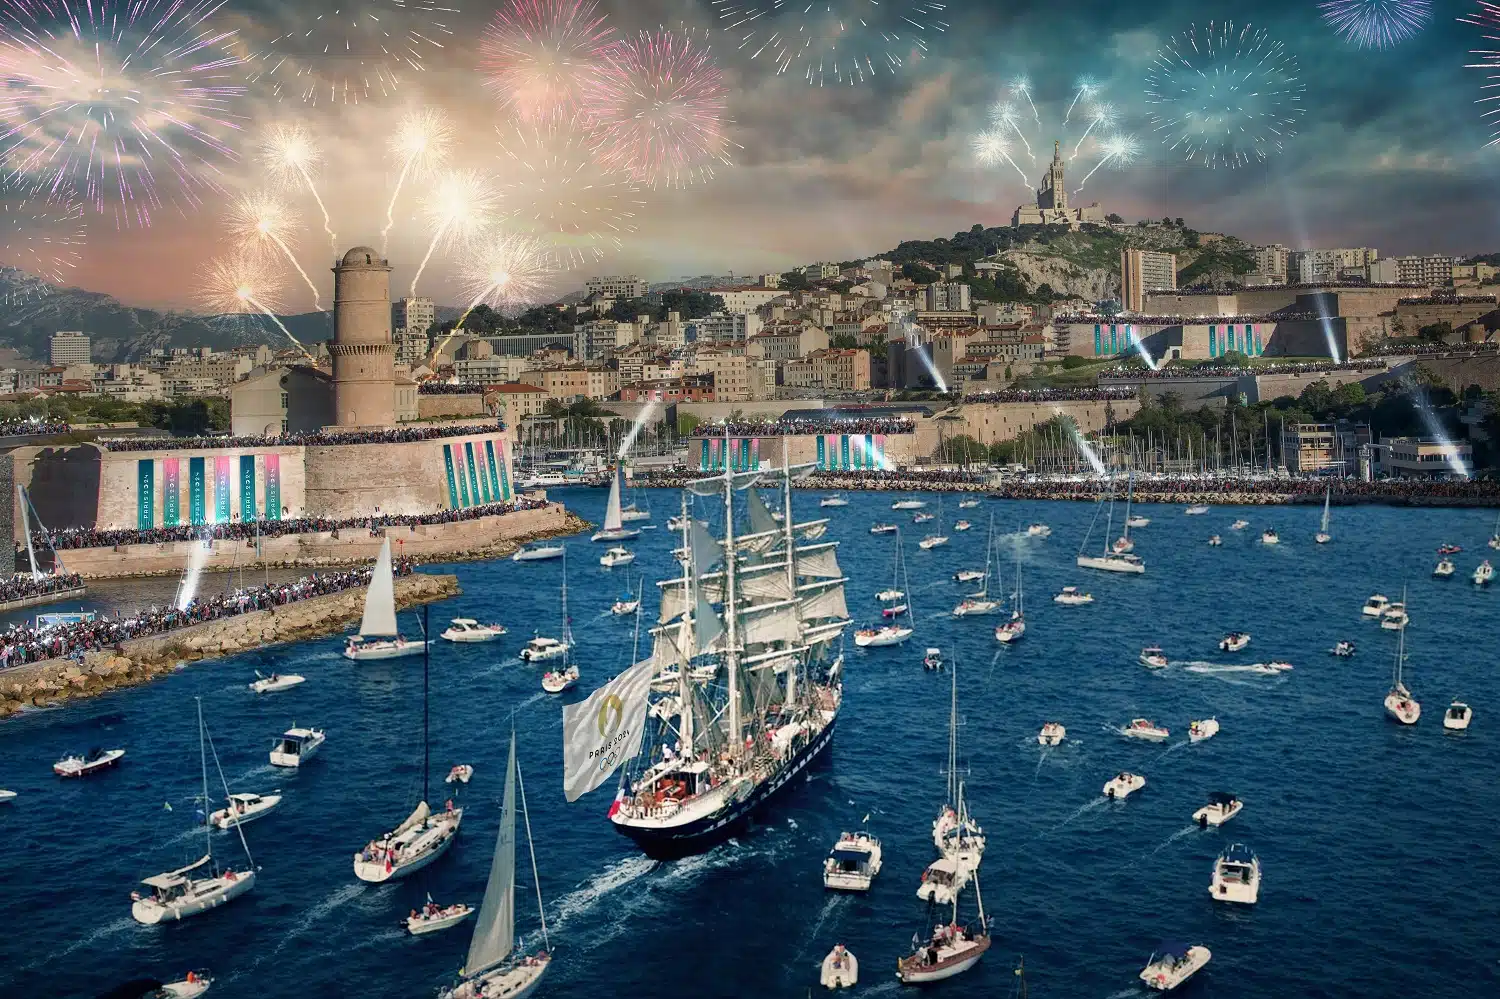 parade maritime, Flamme olympique : la parade maritime revue à la baisse selon le niveau de vent, Made in Marseille